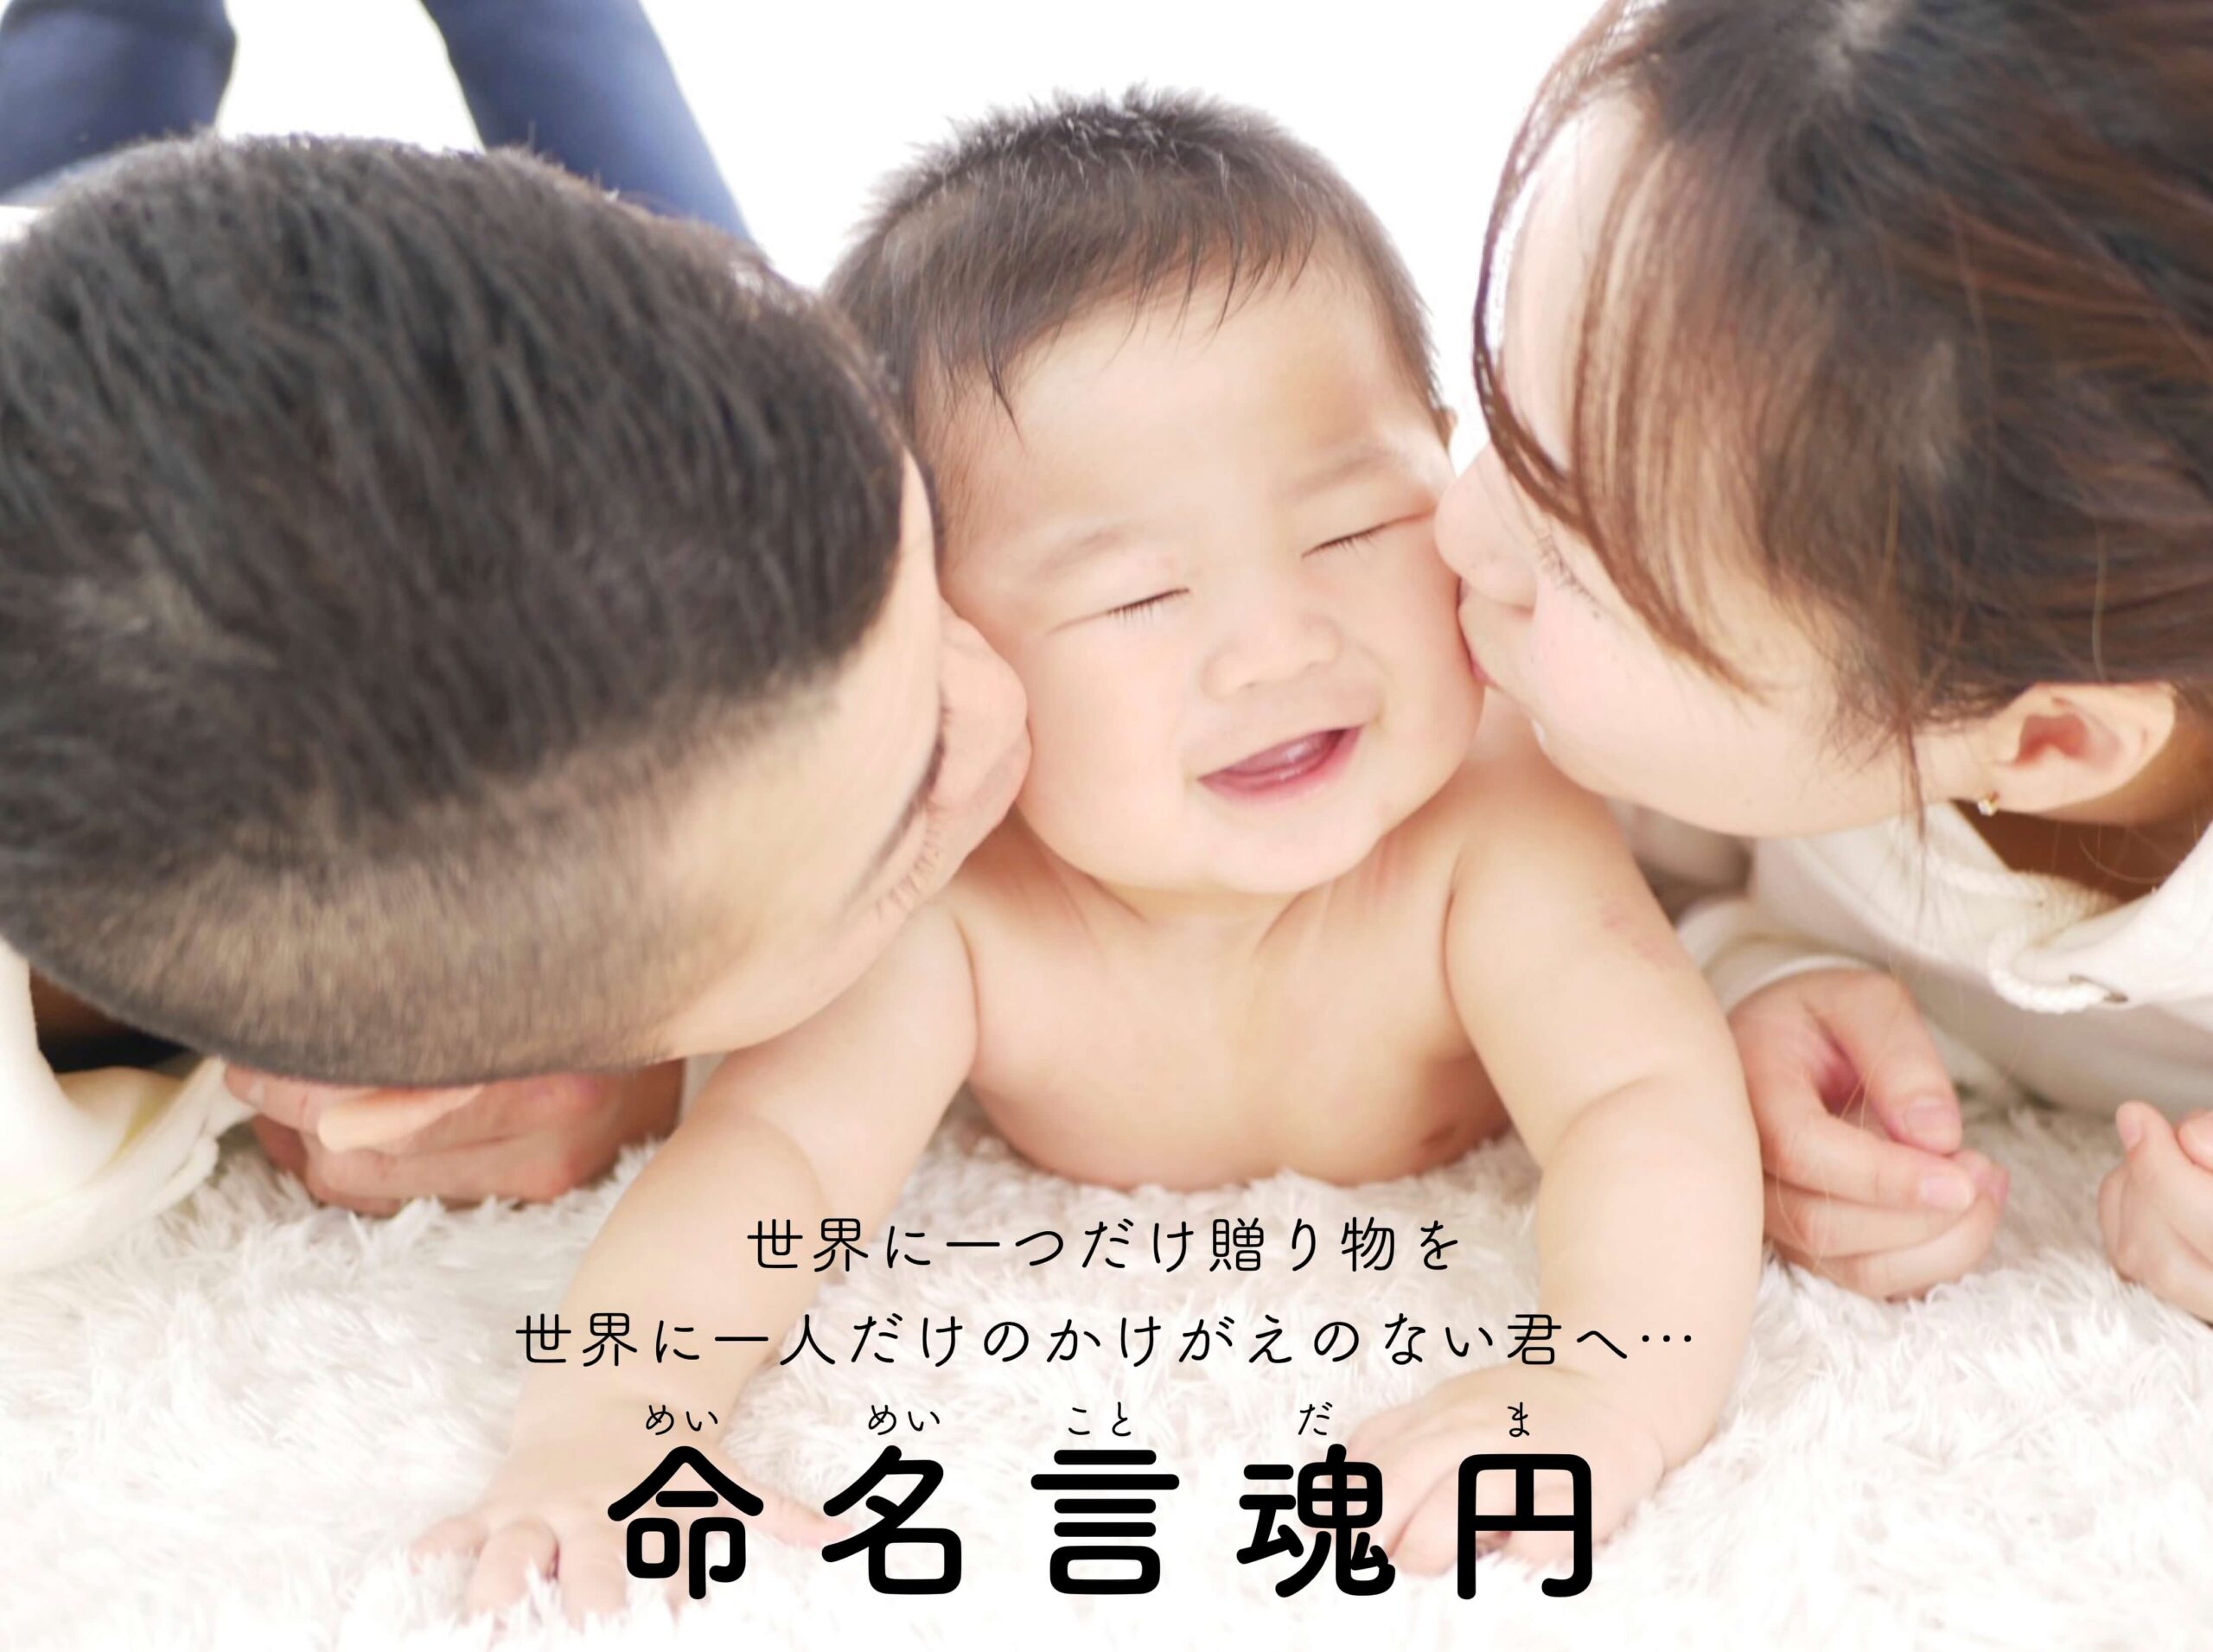 赤ちゃんの名前 羽 仁 衣 漢字の意味は はにい ちゃんの命名書で解説 命名言魂円 めいめいことだま